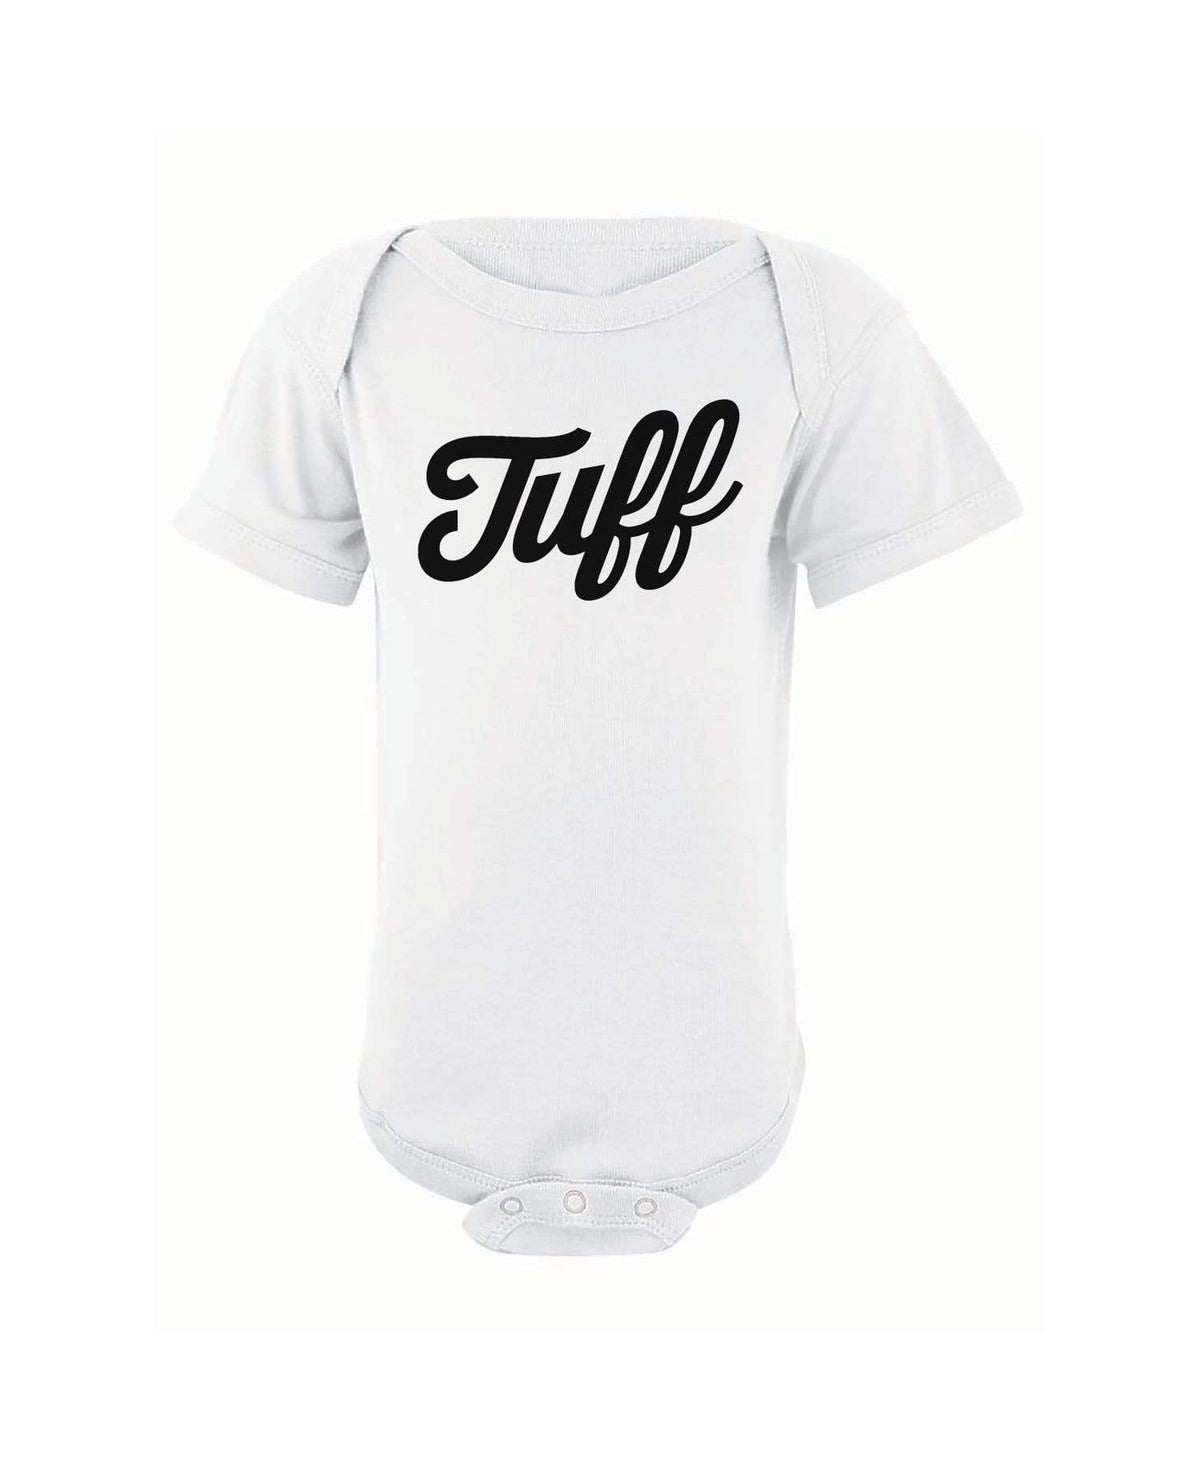 TUFF Script Infant Onesie NB / White TuffWraps.com